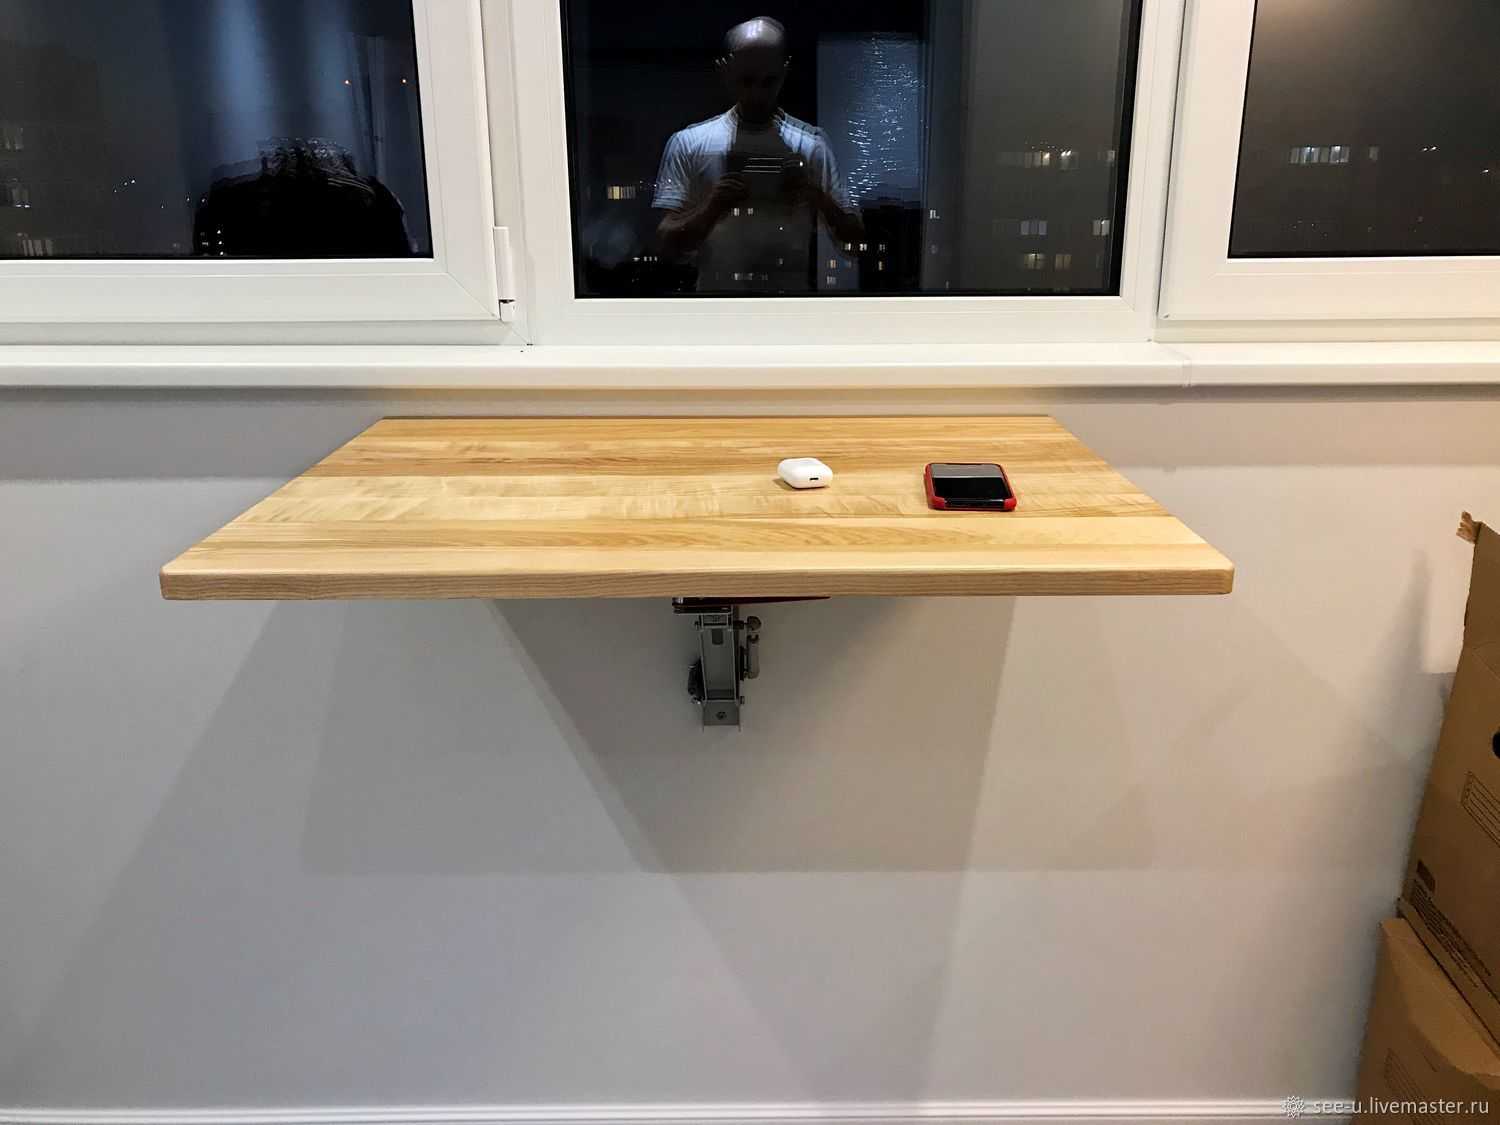 Откидной стол – удобная, максимально практичная конструкция